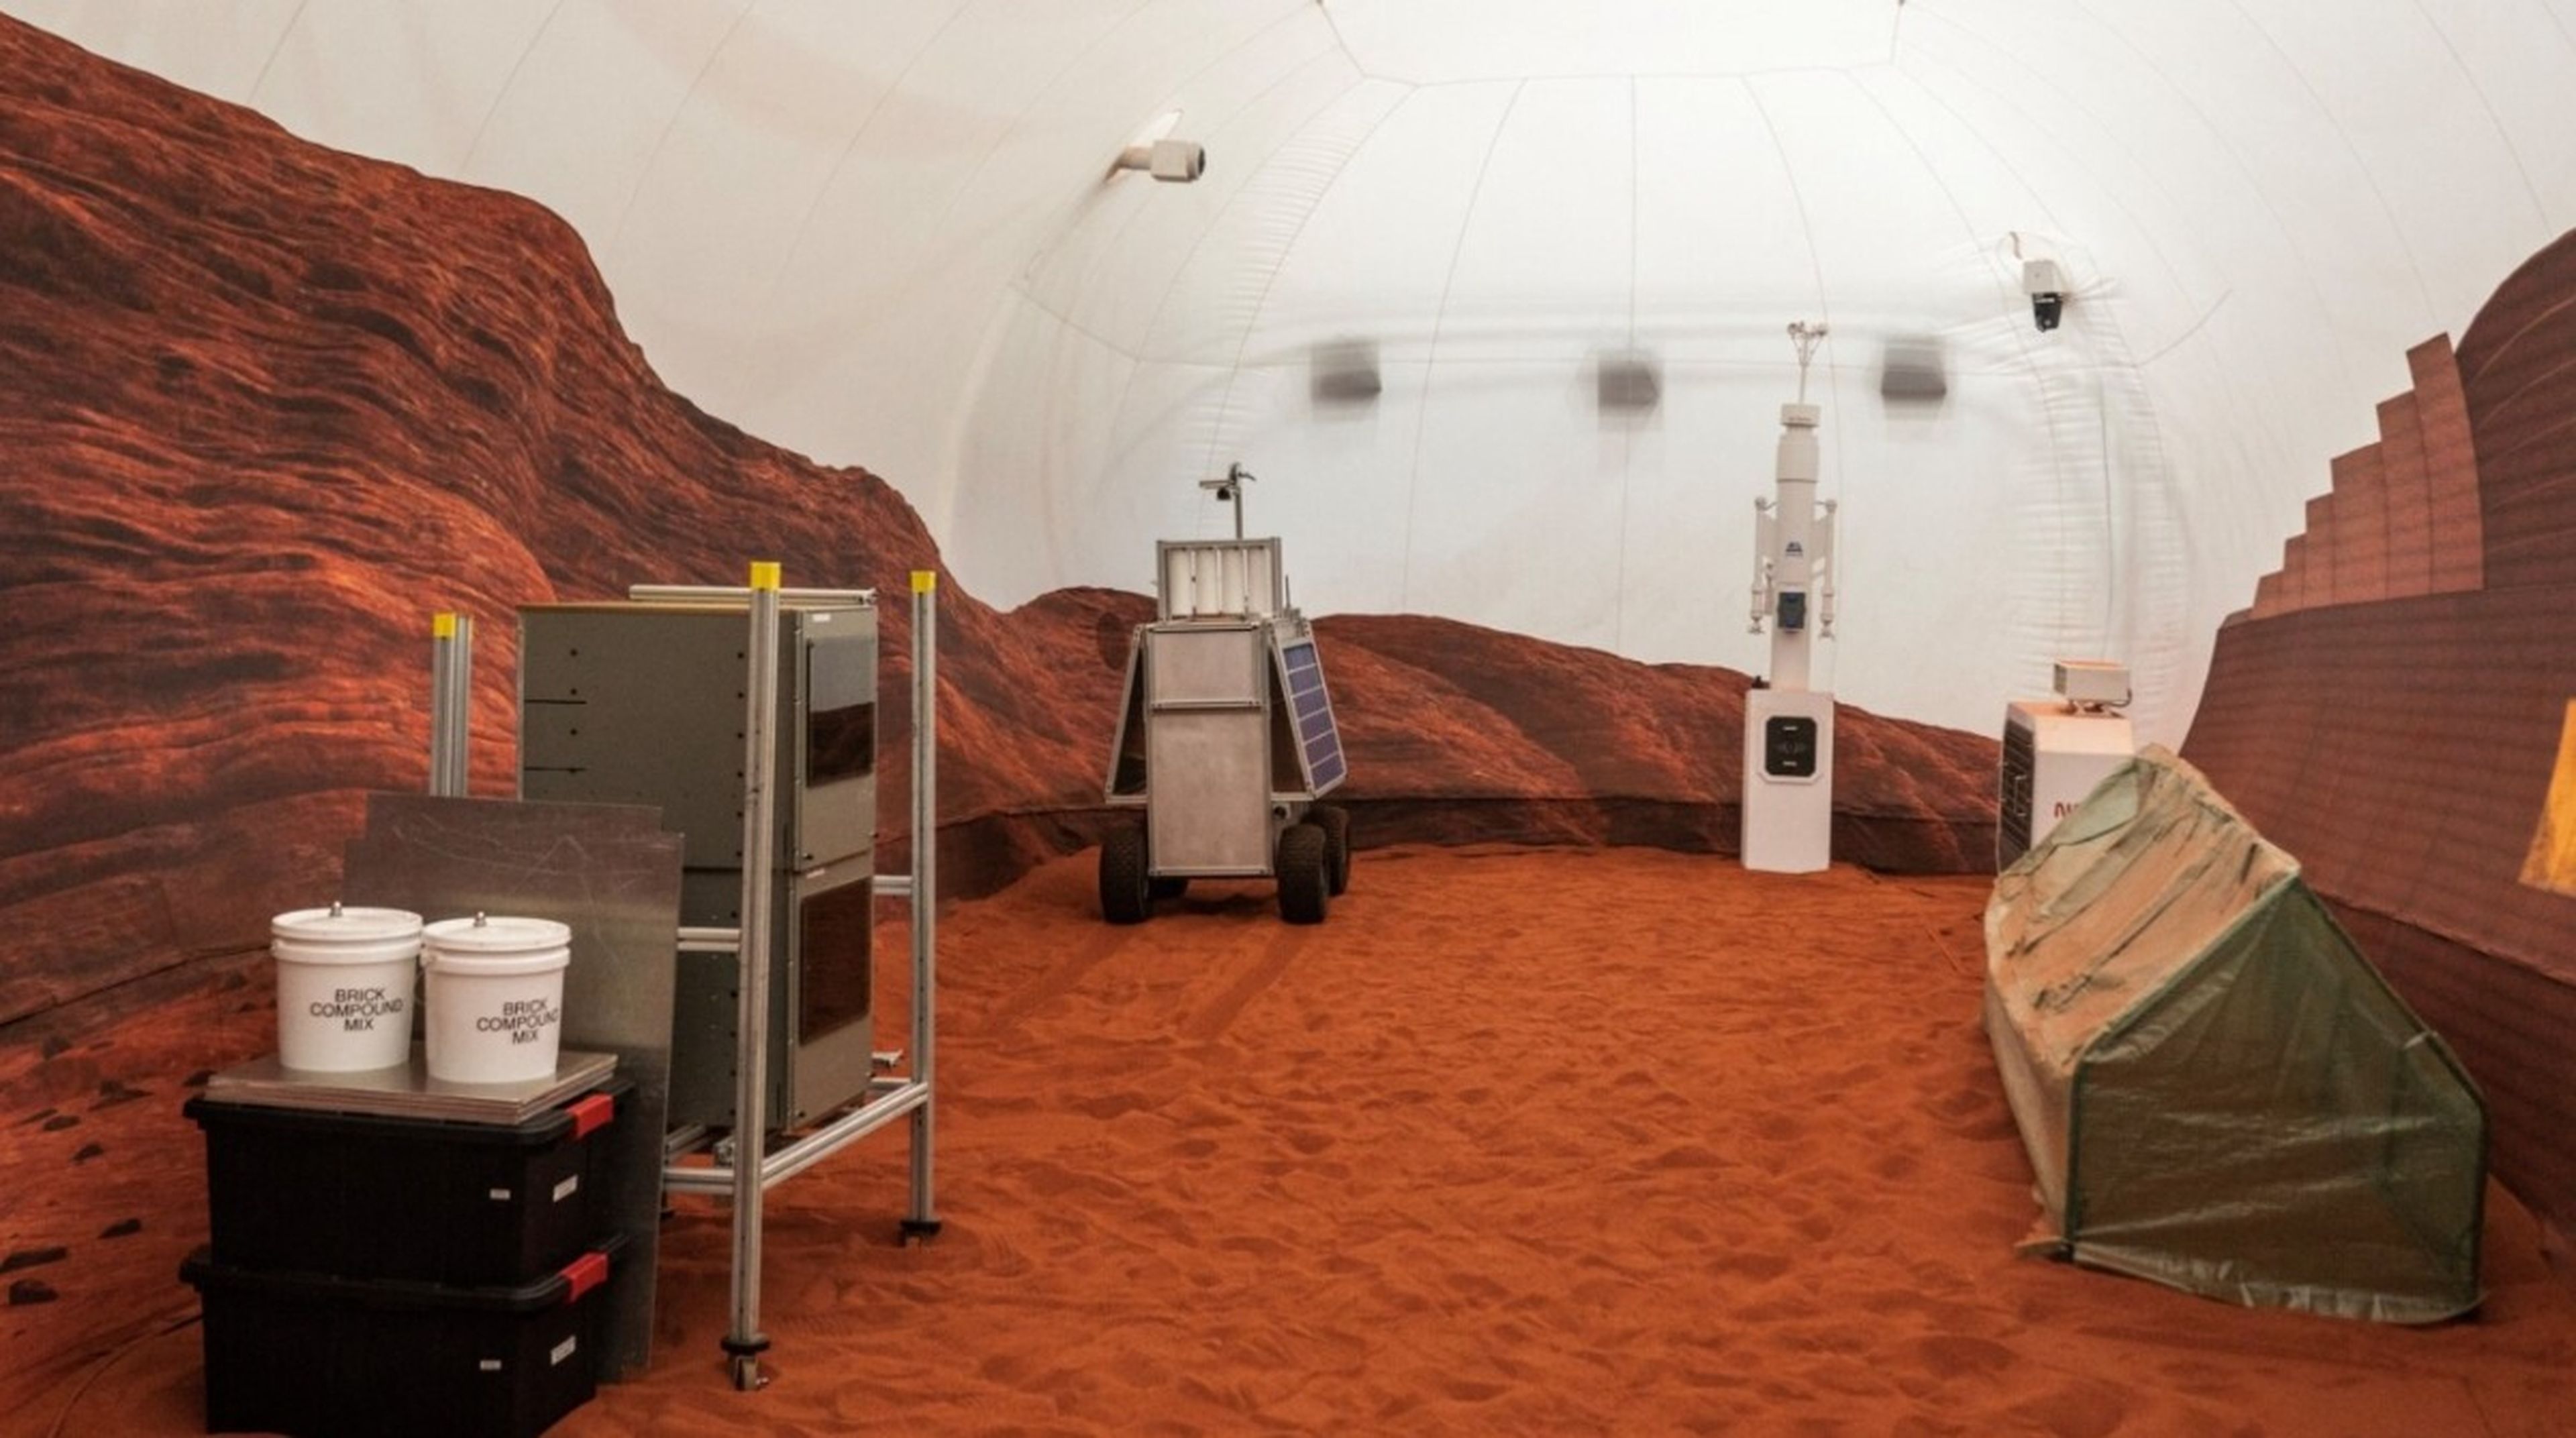 Estos 4 voluntarios de la NASA están a punto de vivir un año en un hábitat que simula Marte